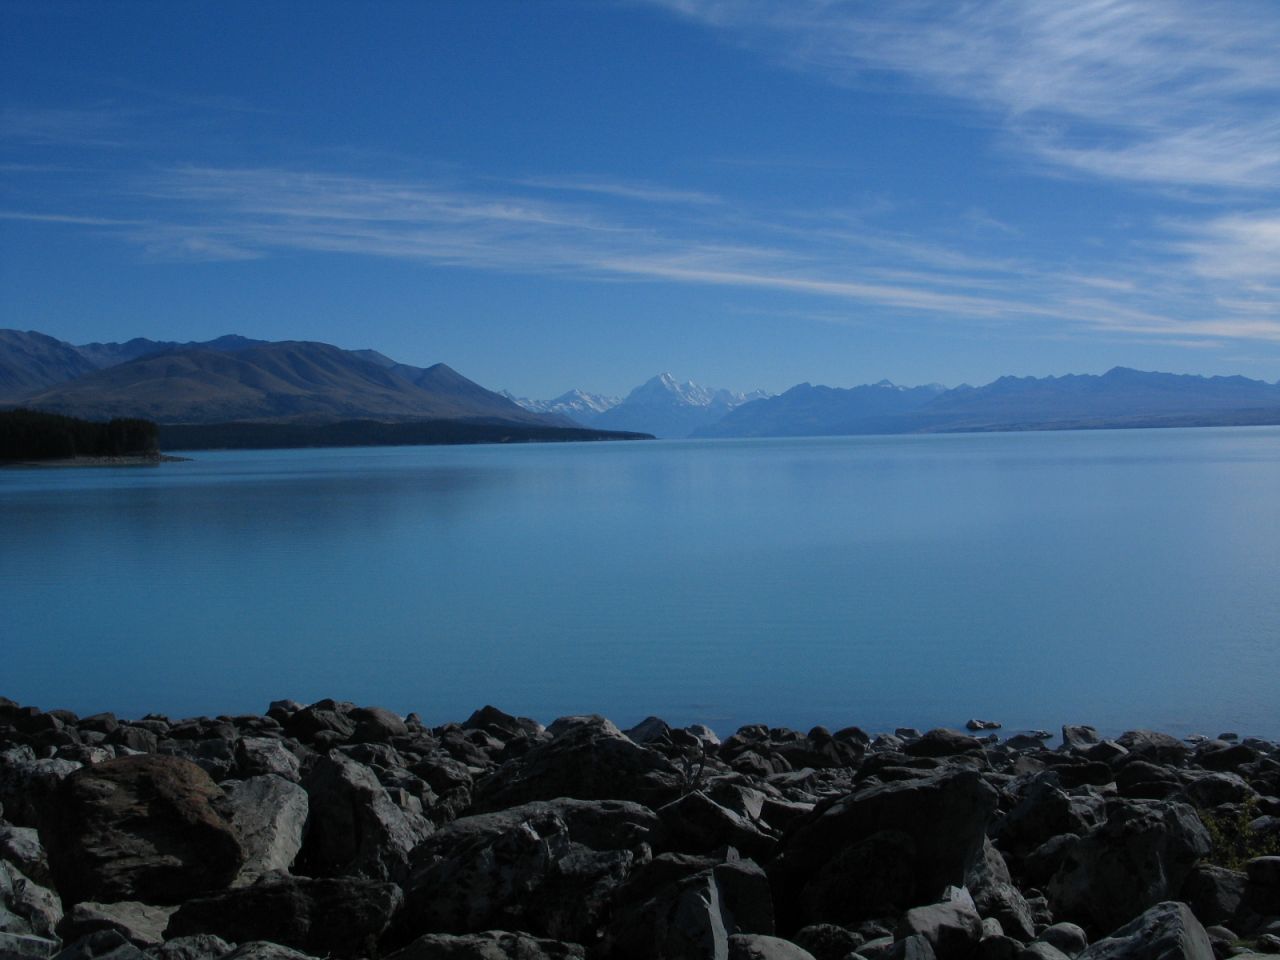 fotka / image pohled pes Lake Pukaki na Mt. Cook, New Zealand, kolekce E